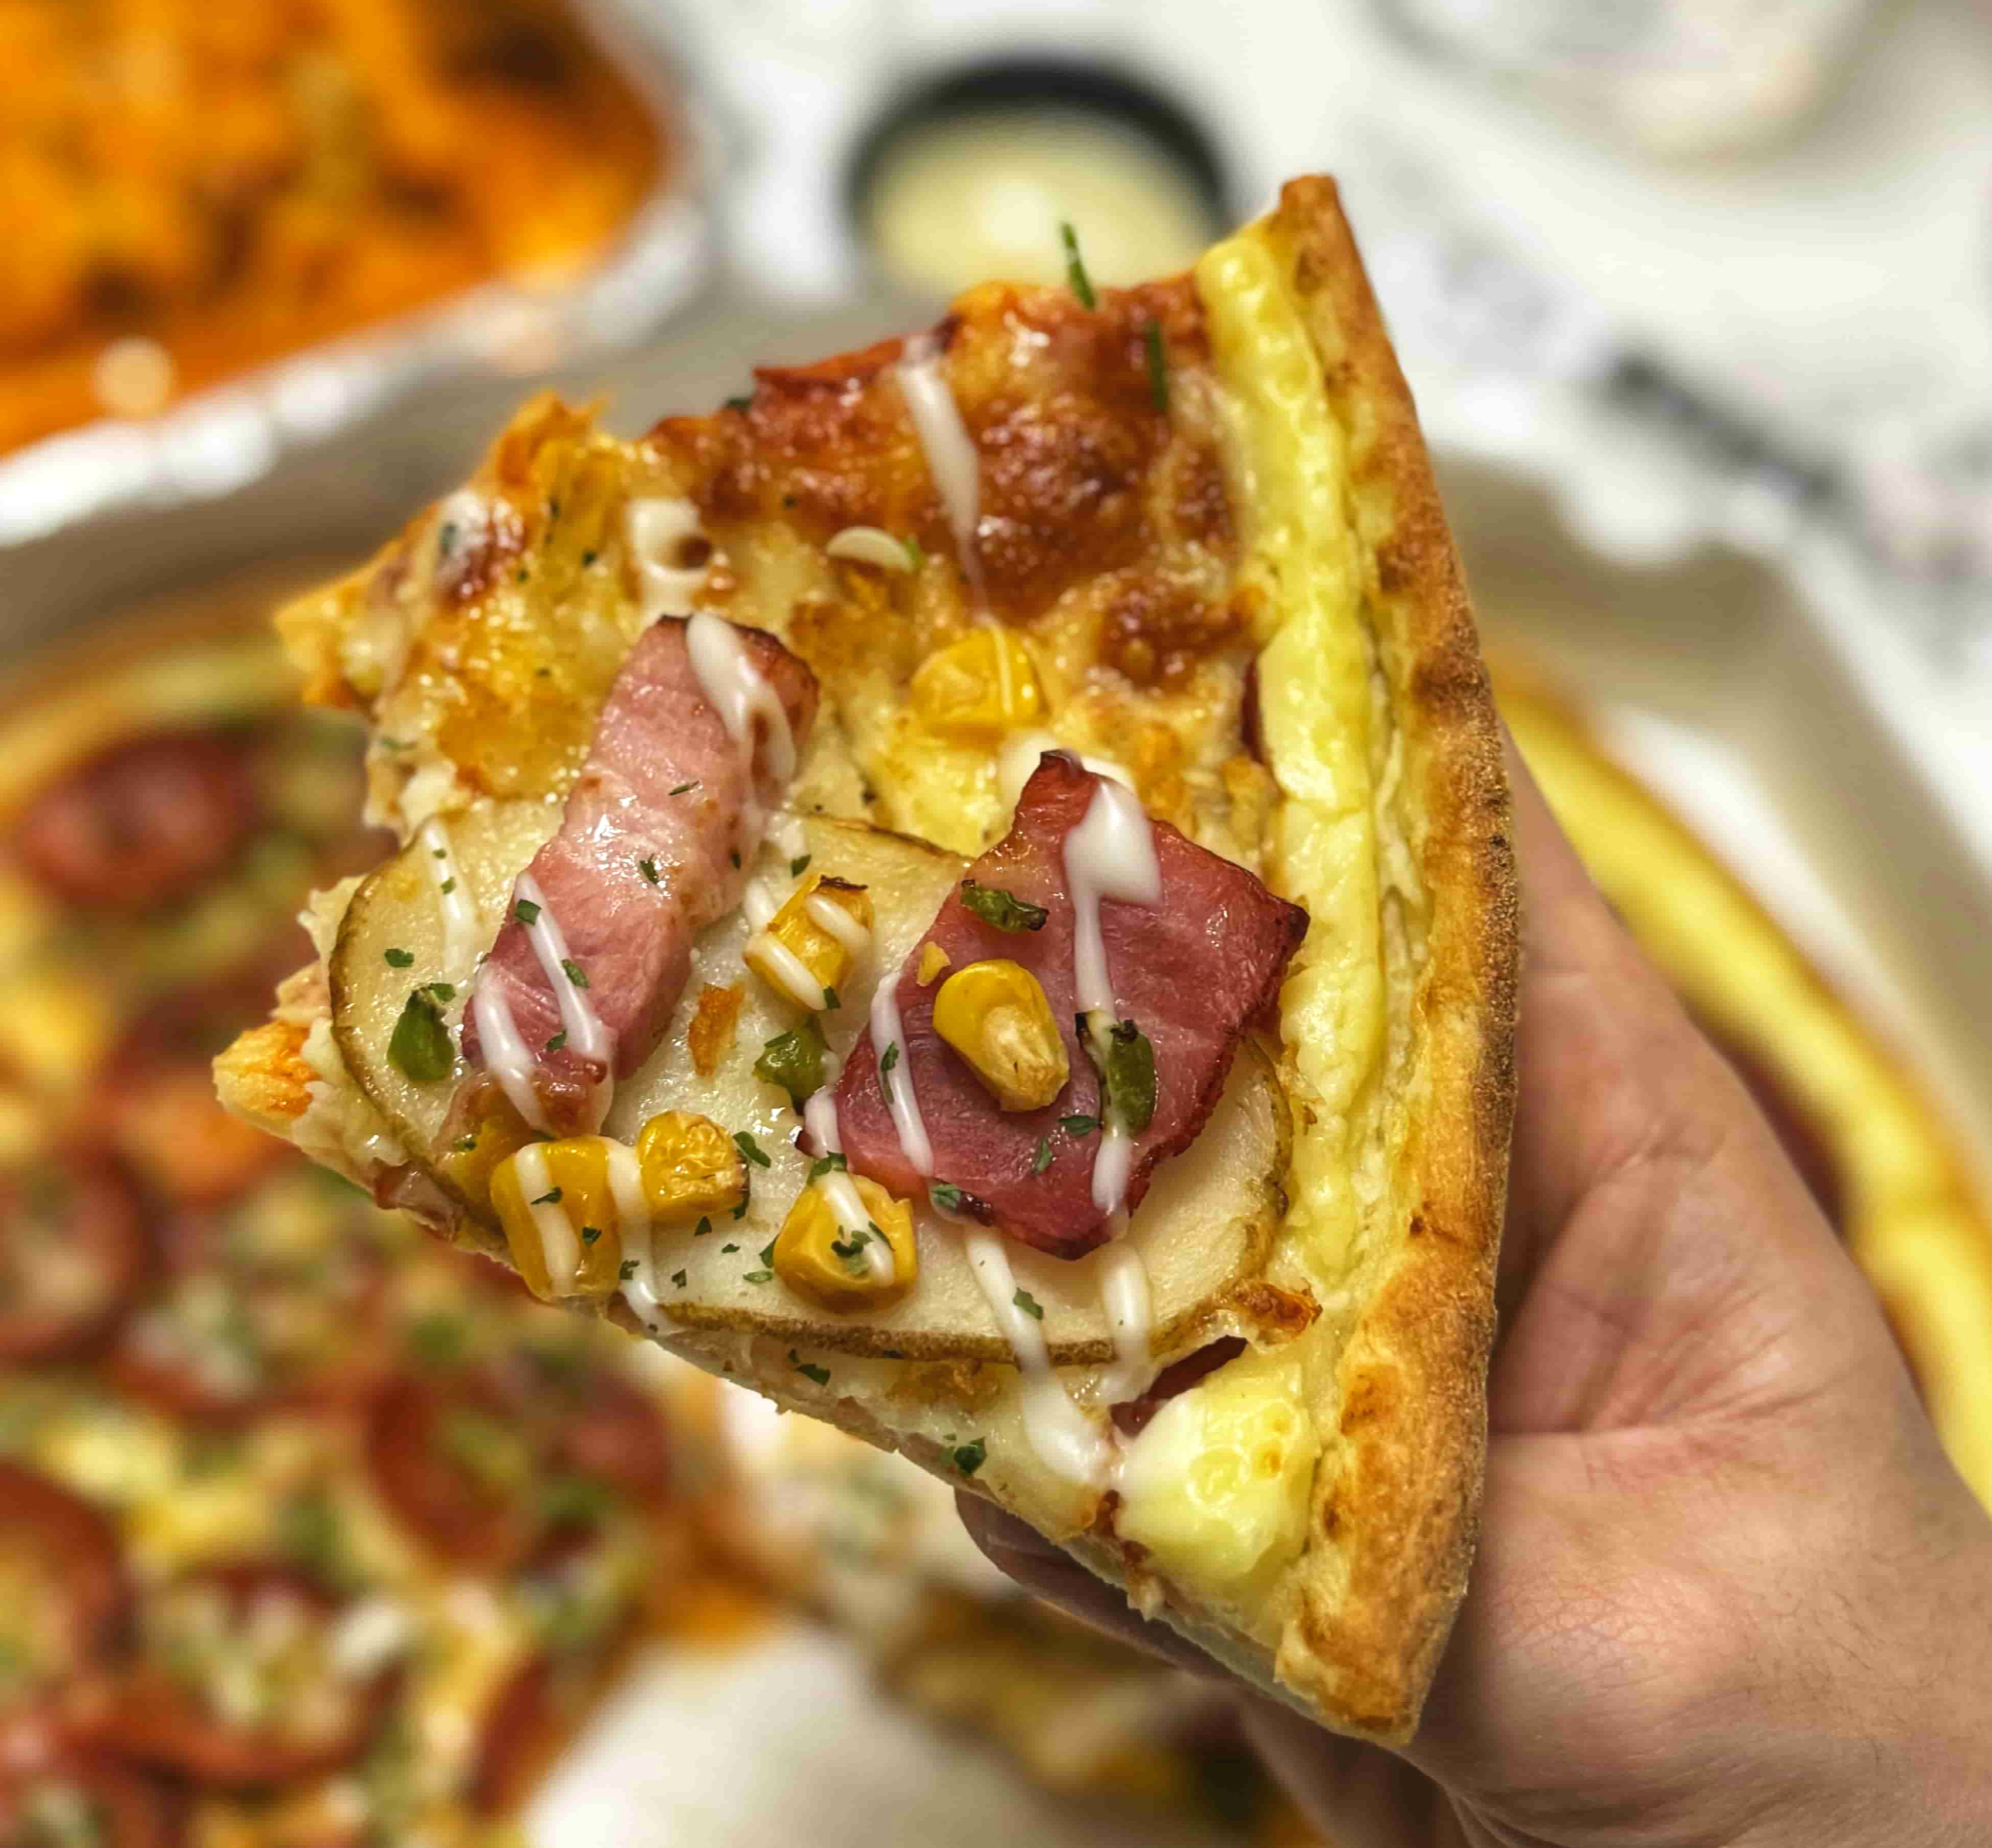 배달 피자 맛집 &#39;피자와일드&#39;의 포테이토 피자를 먹는 사진